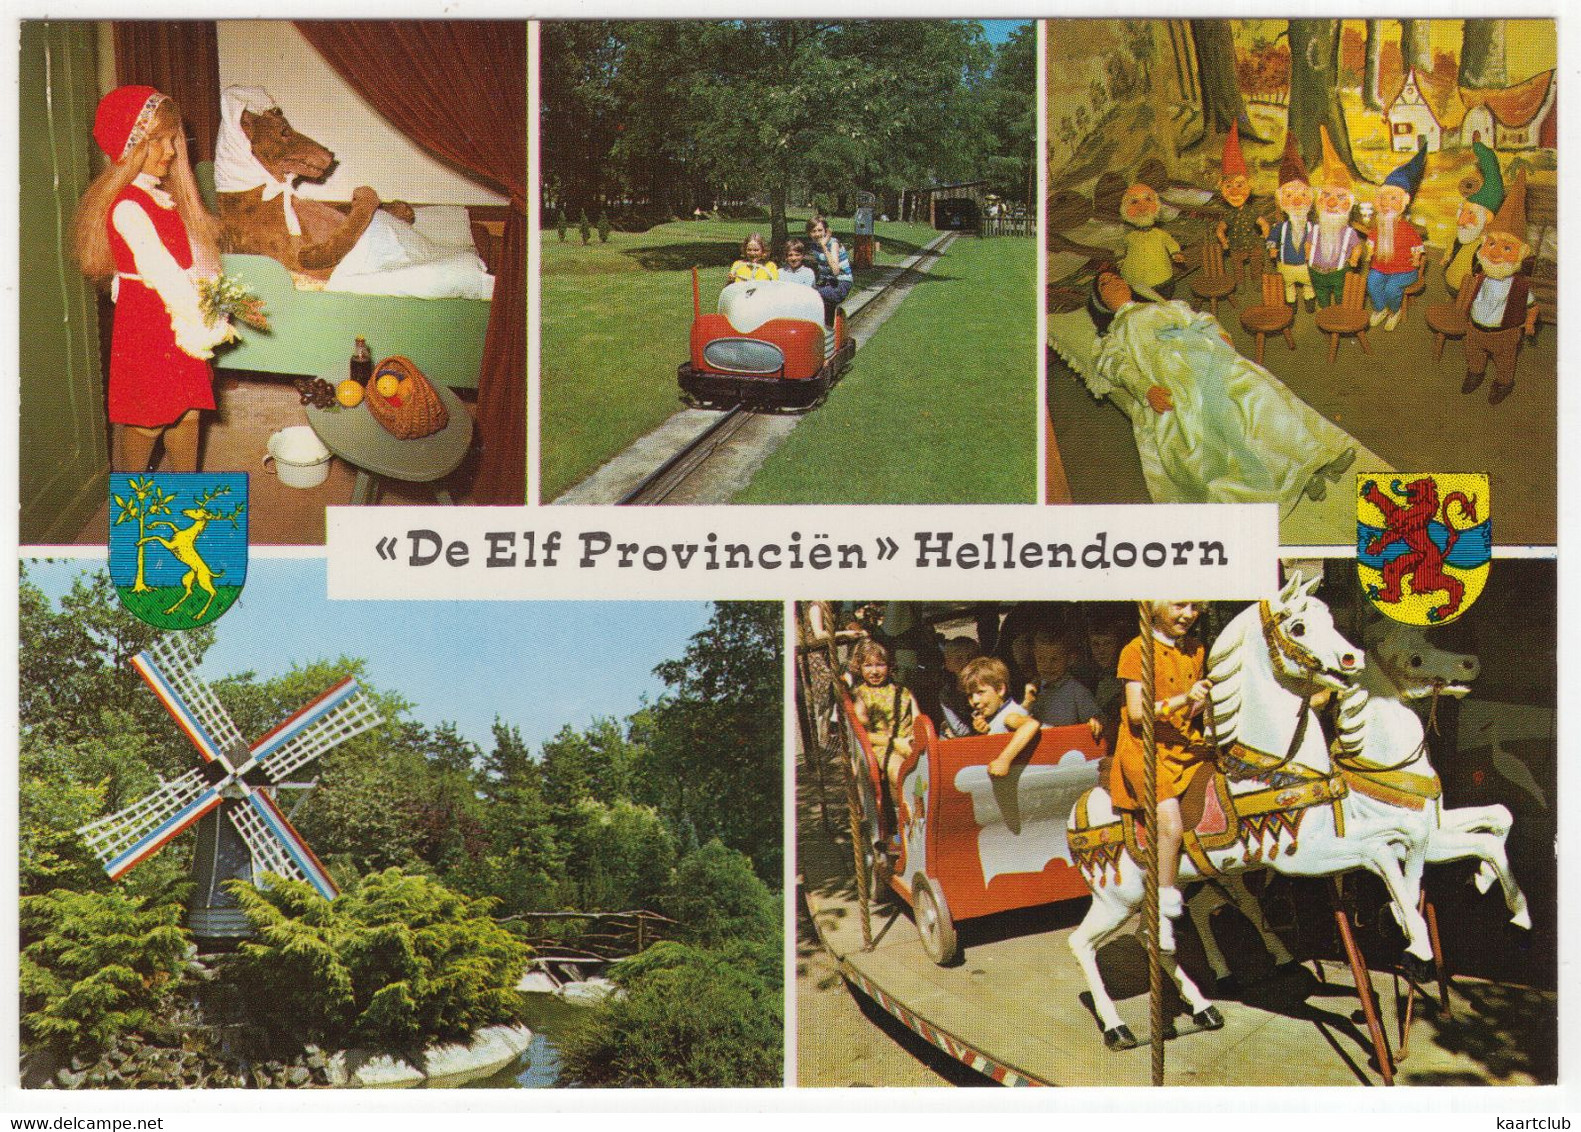 Hellendoorn - 'De Elf Provinciën' - Sprookjestuin, Monorail, Carrousel, Molen, Sprookjes - (Ov.) - Nr. L 880 - Hellendoorn